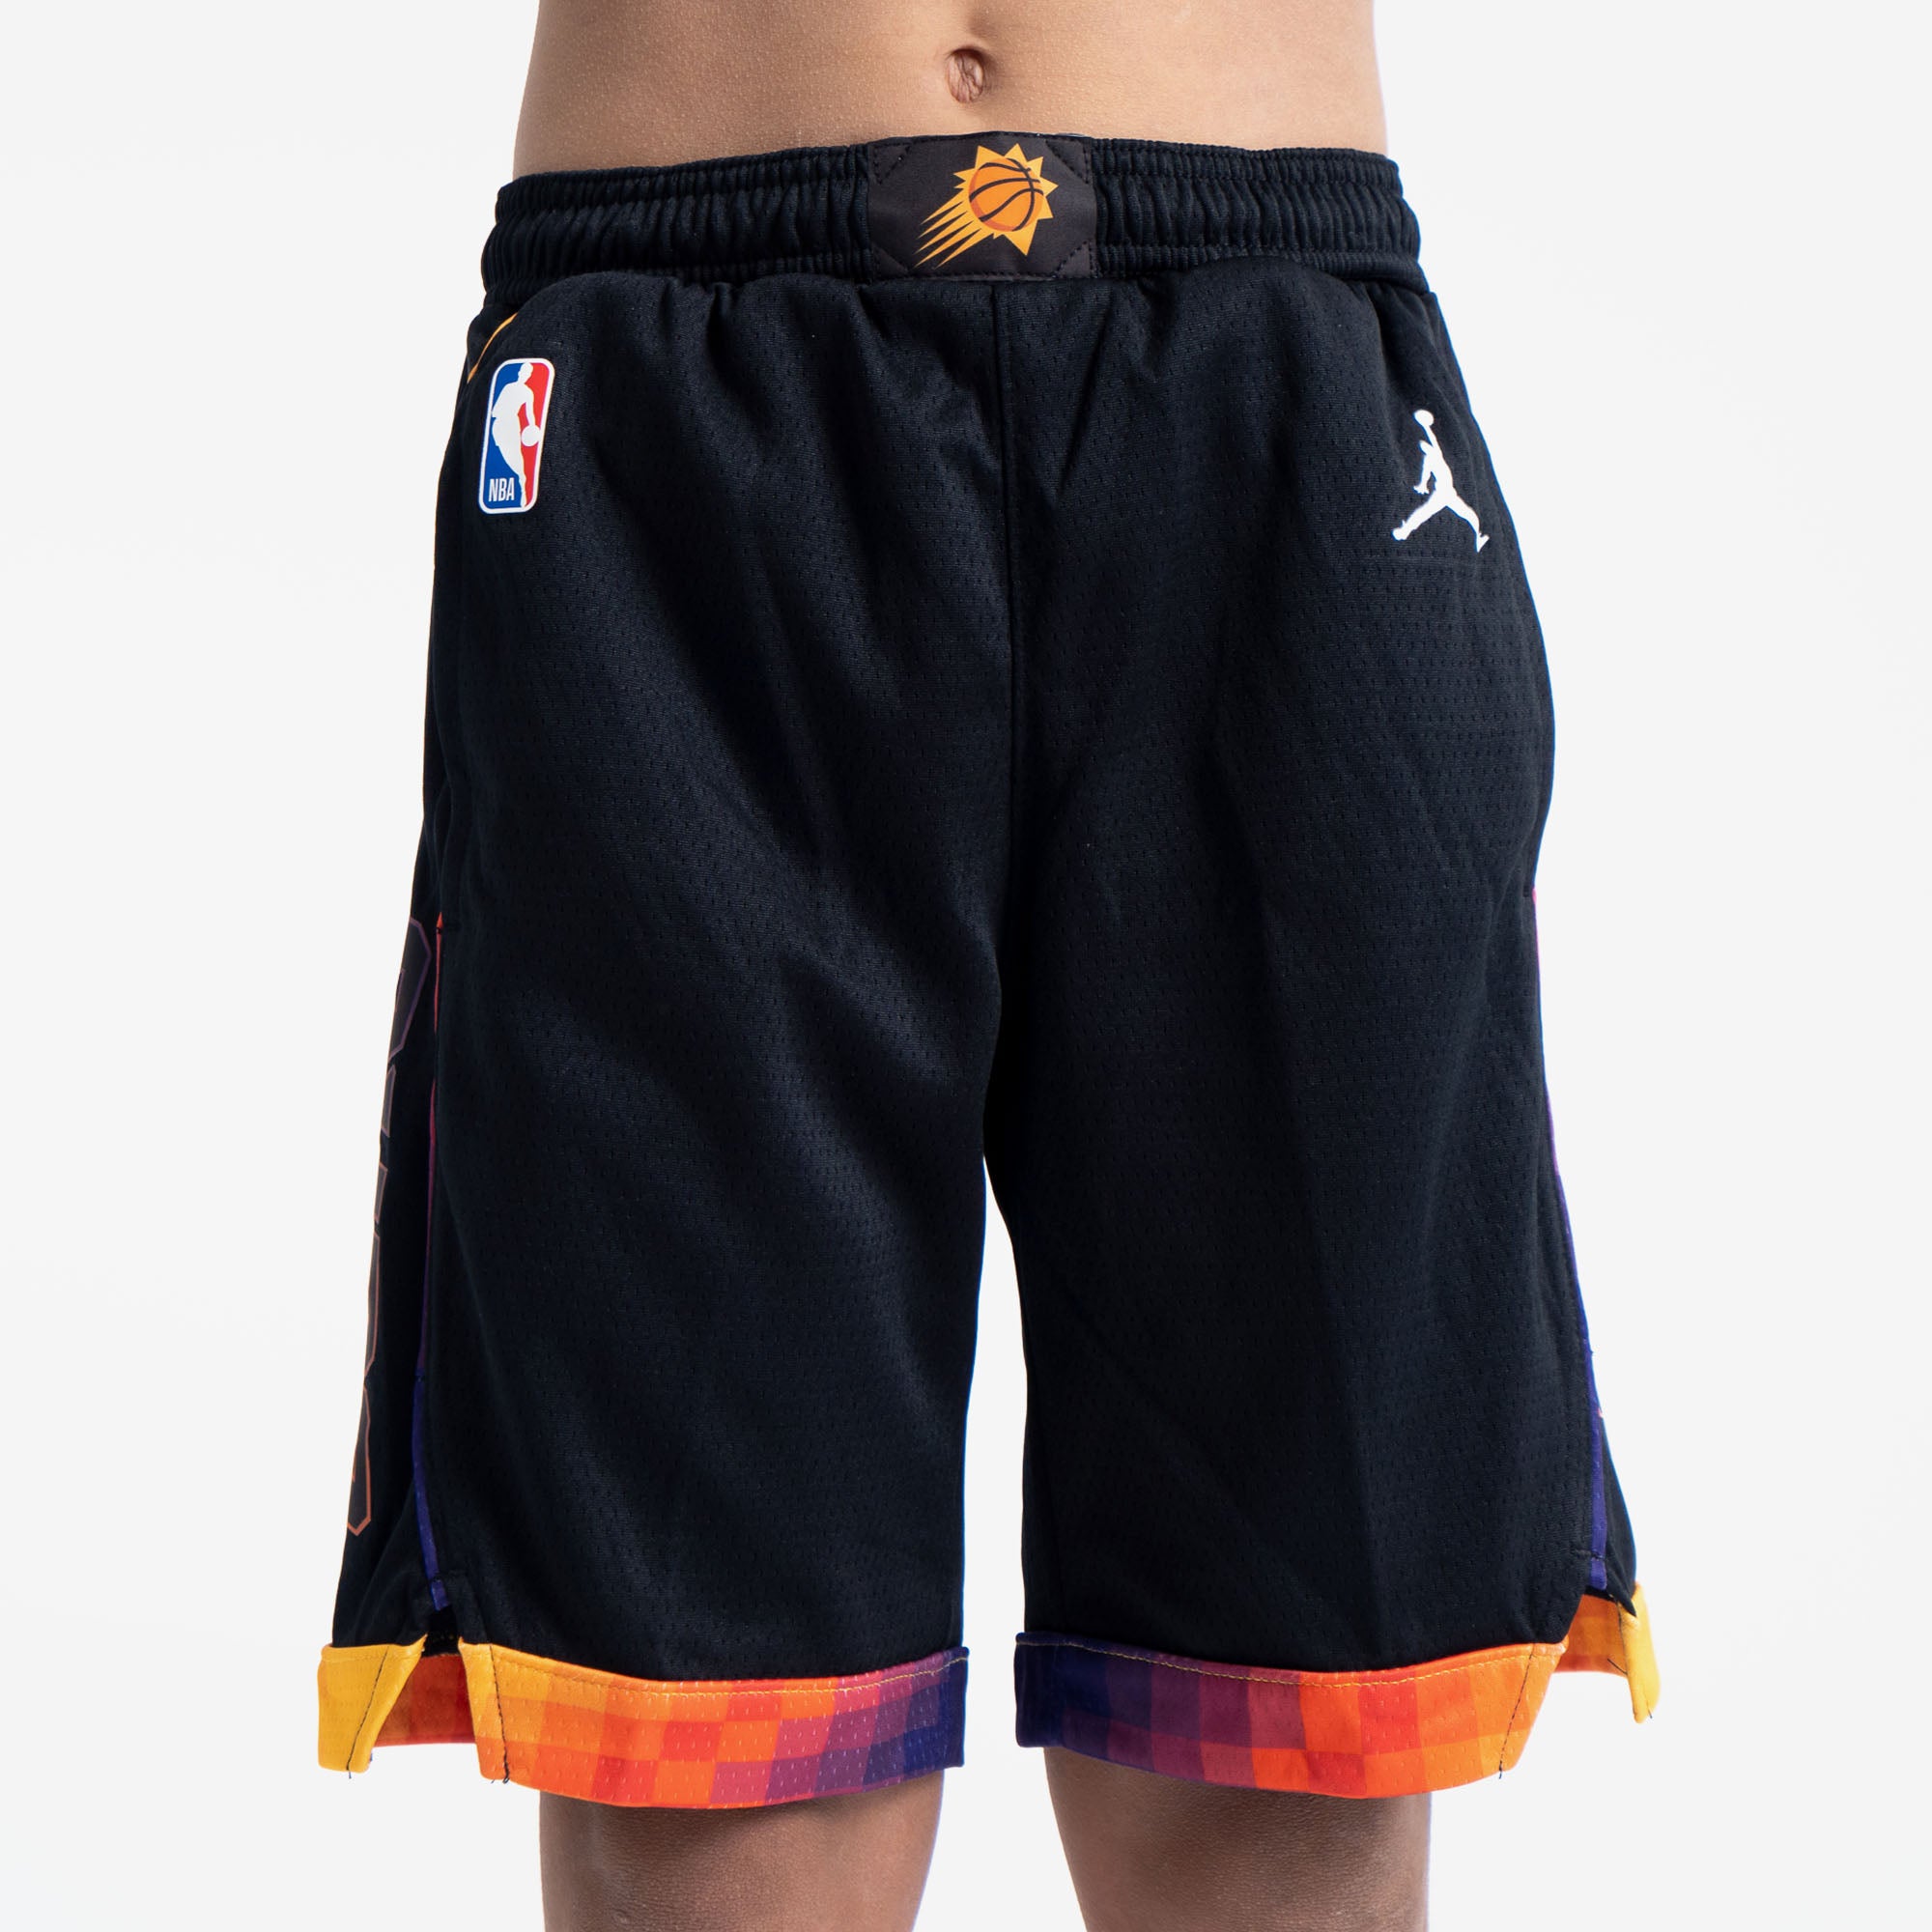 youth nba basketball shorts